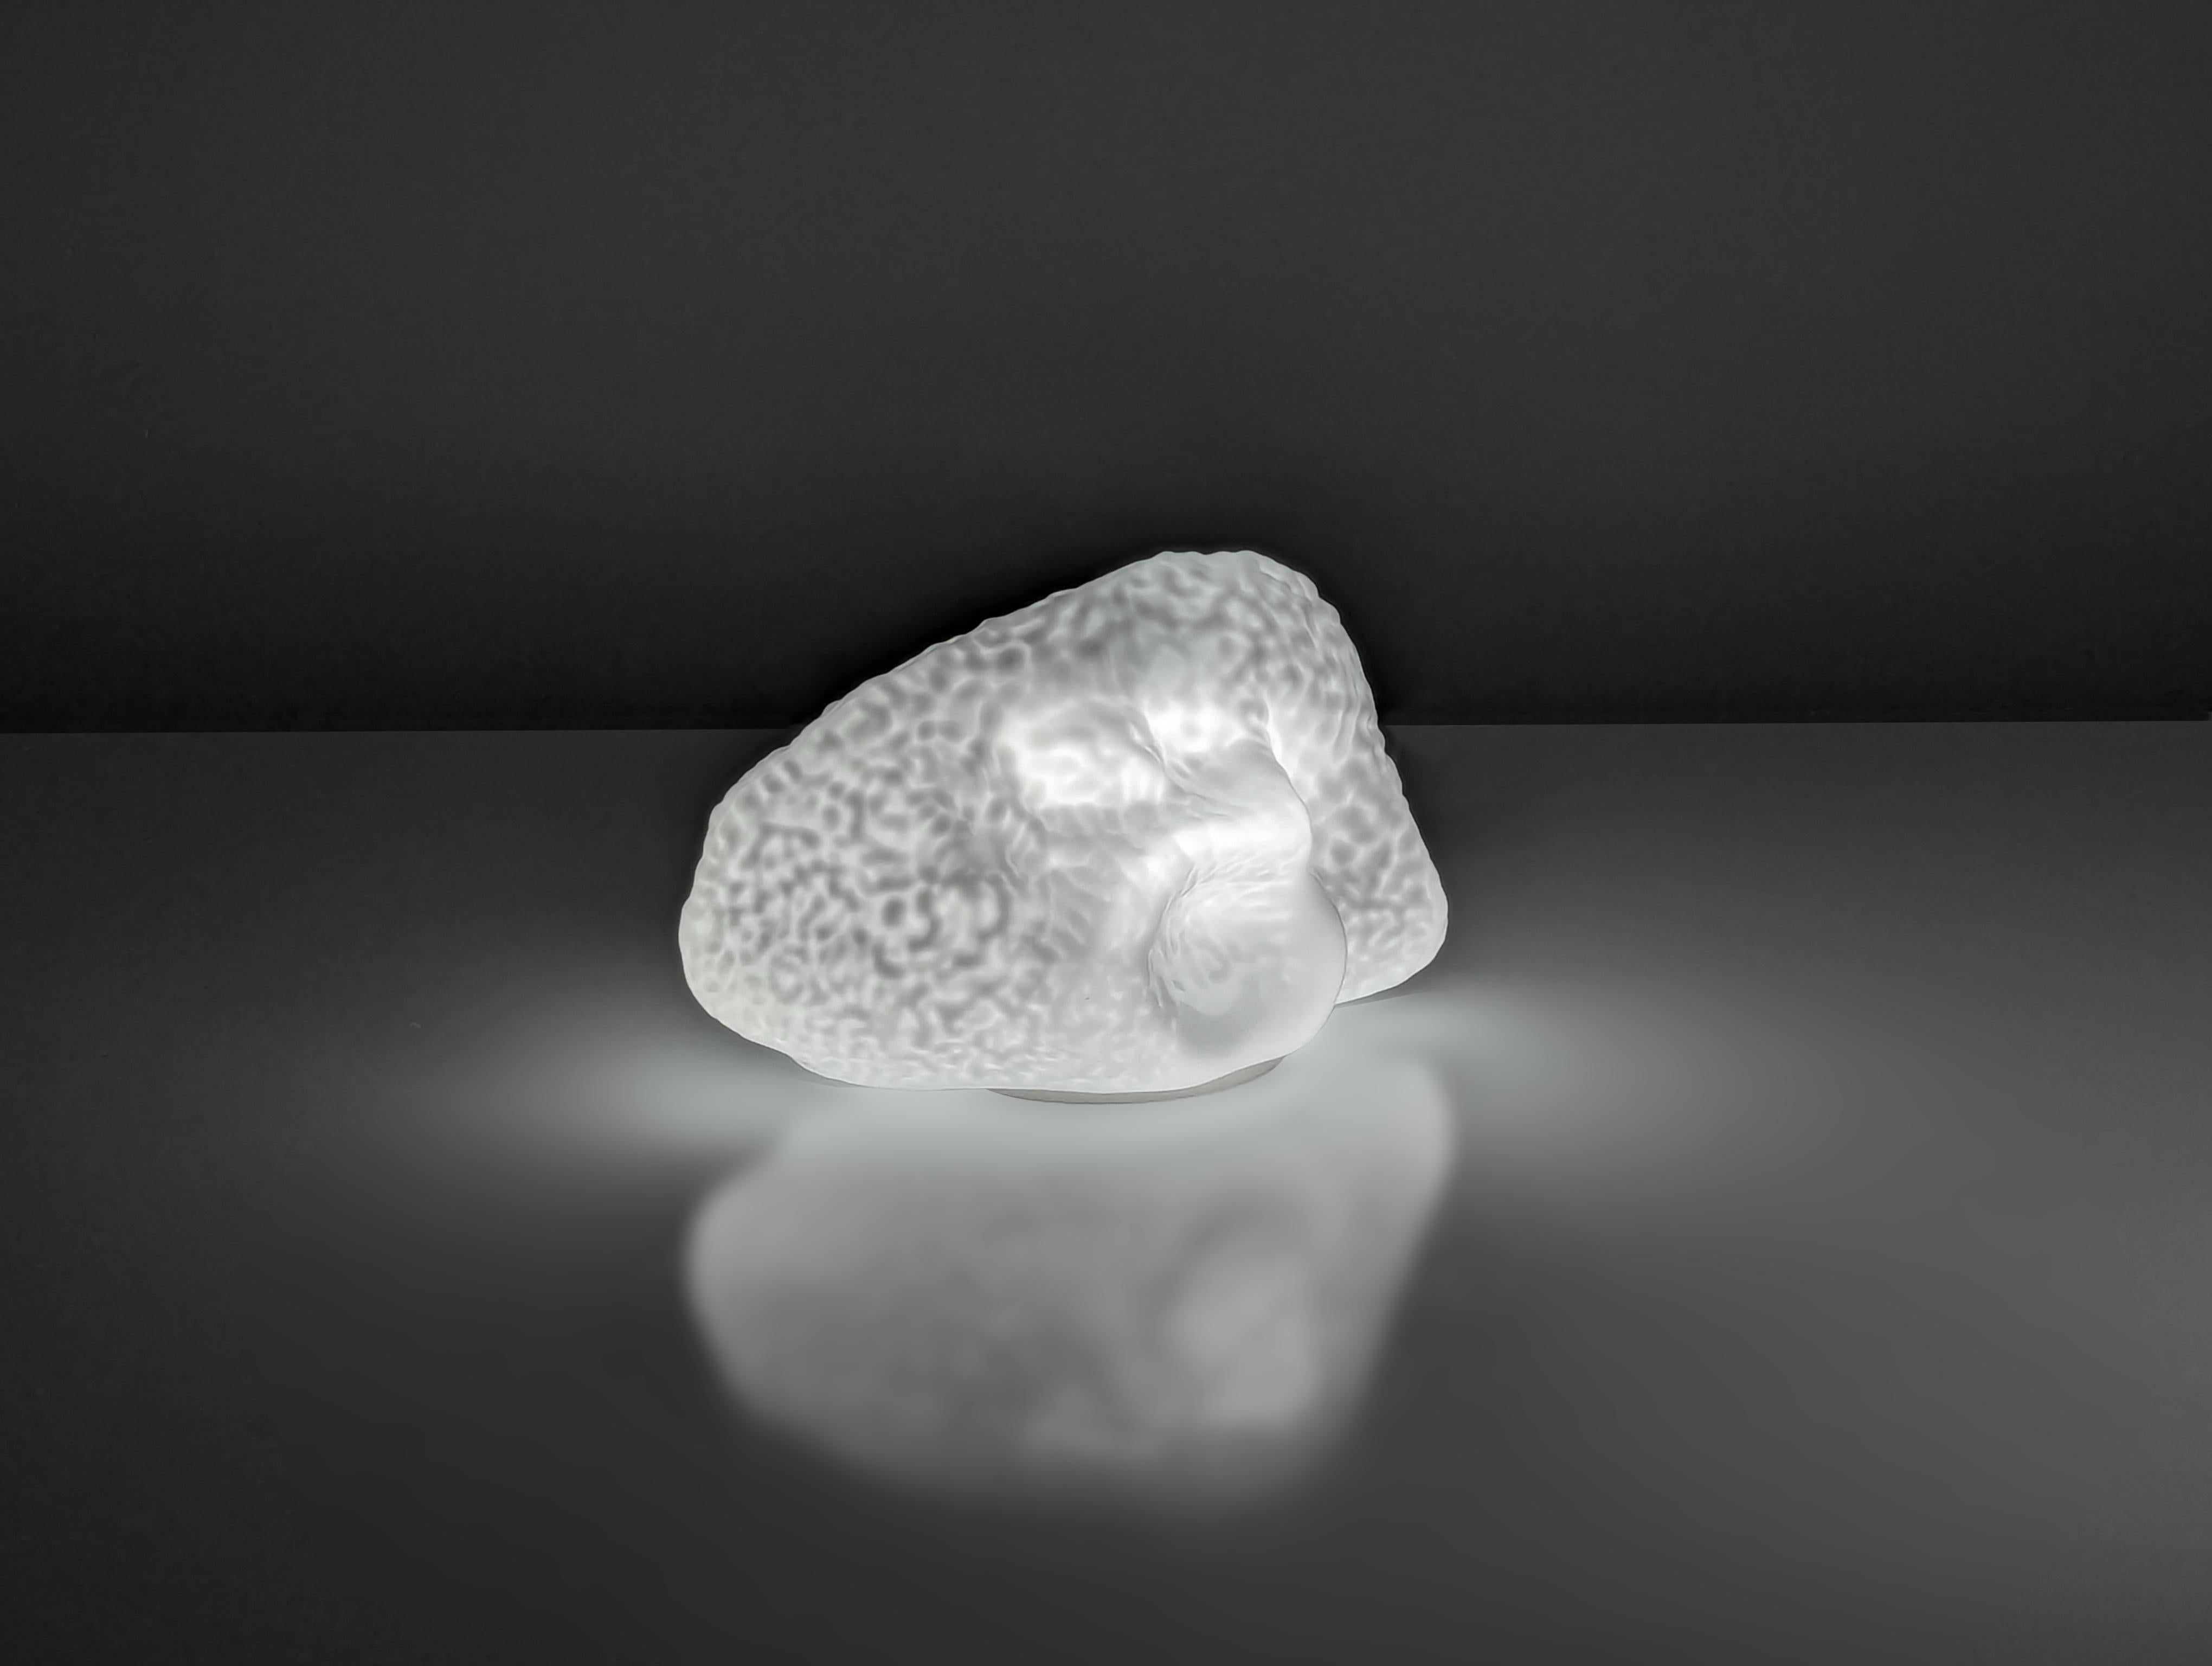 Osso Lampe von Carlo Nason für Mazzega in den 70er Jahren aus Iceberg oder Eisbein Typ Glas für seine Helligkeit und Weiß, die sich mit angenehmen Tönen, wenn beleuchtet. Ein wunderschönes, äußerst dekoratives Designerstück von einem der großen